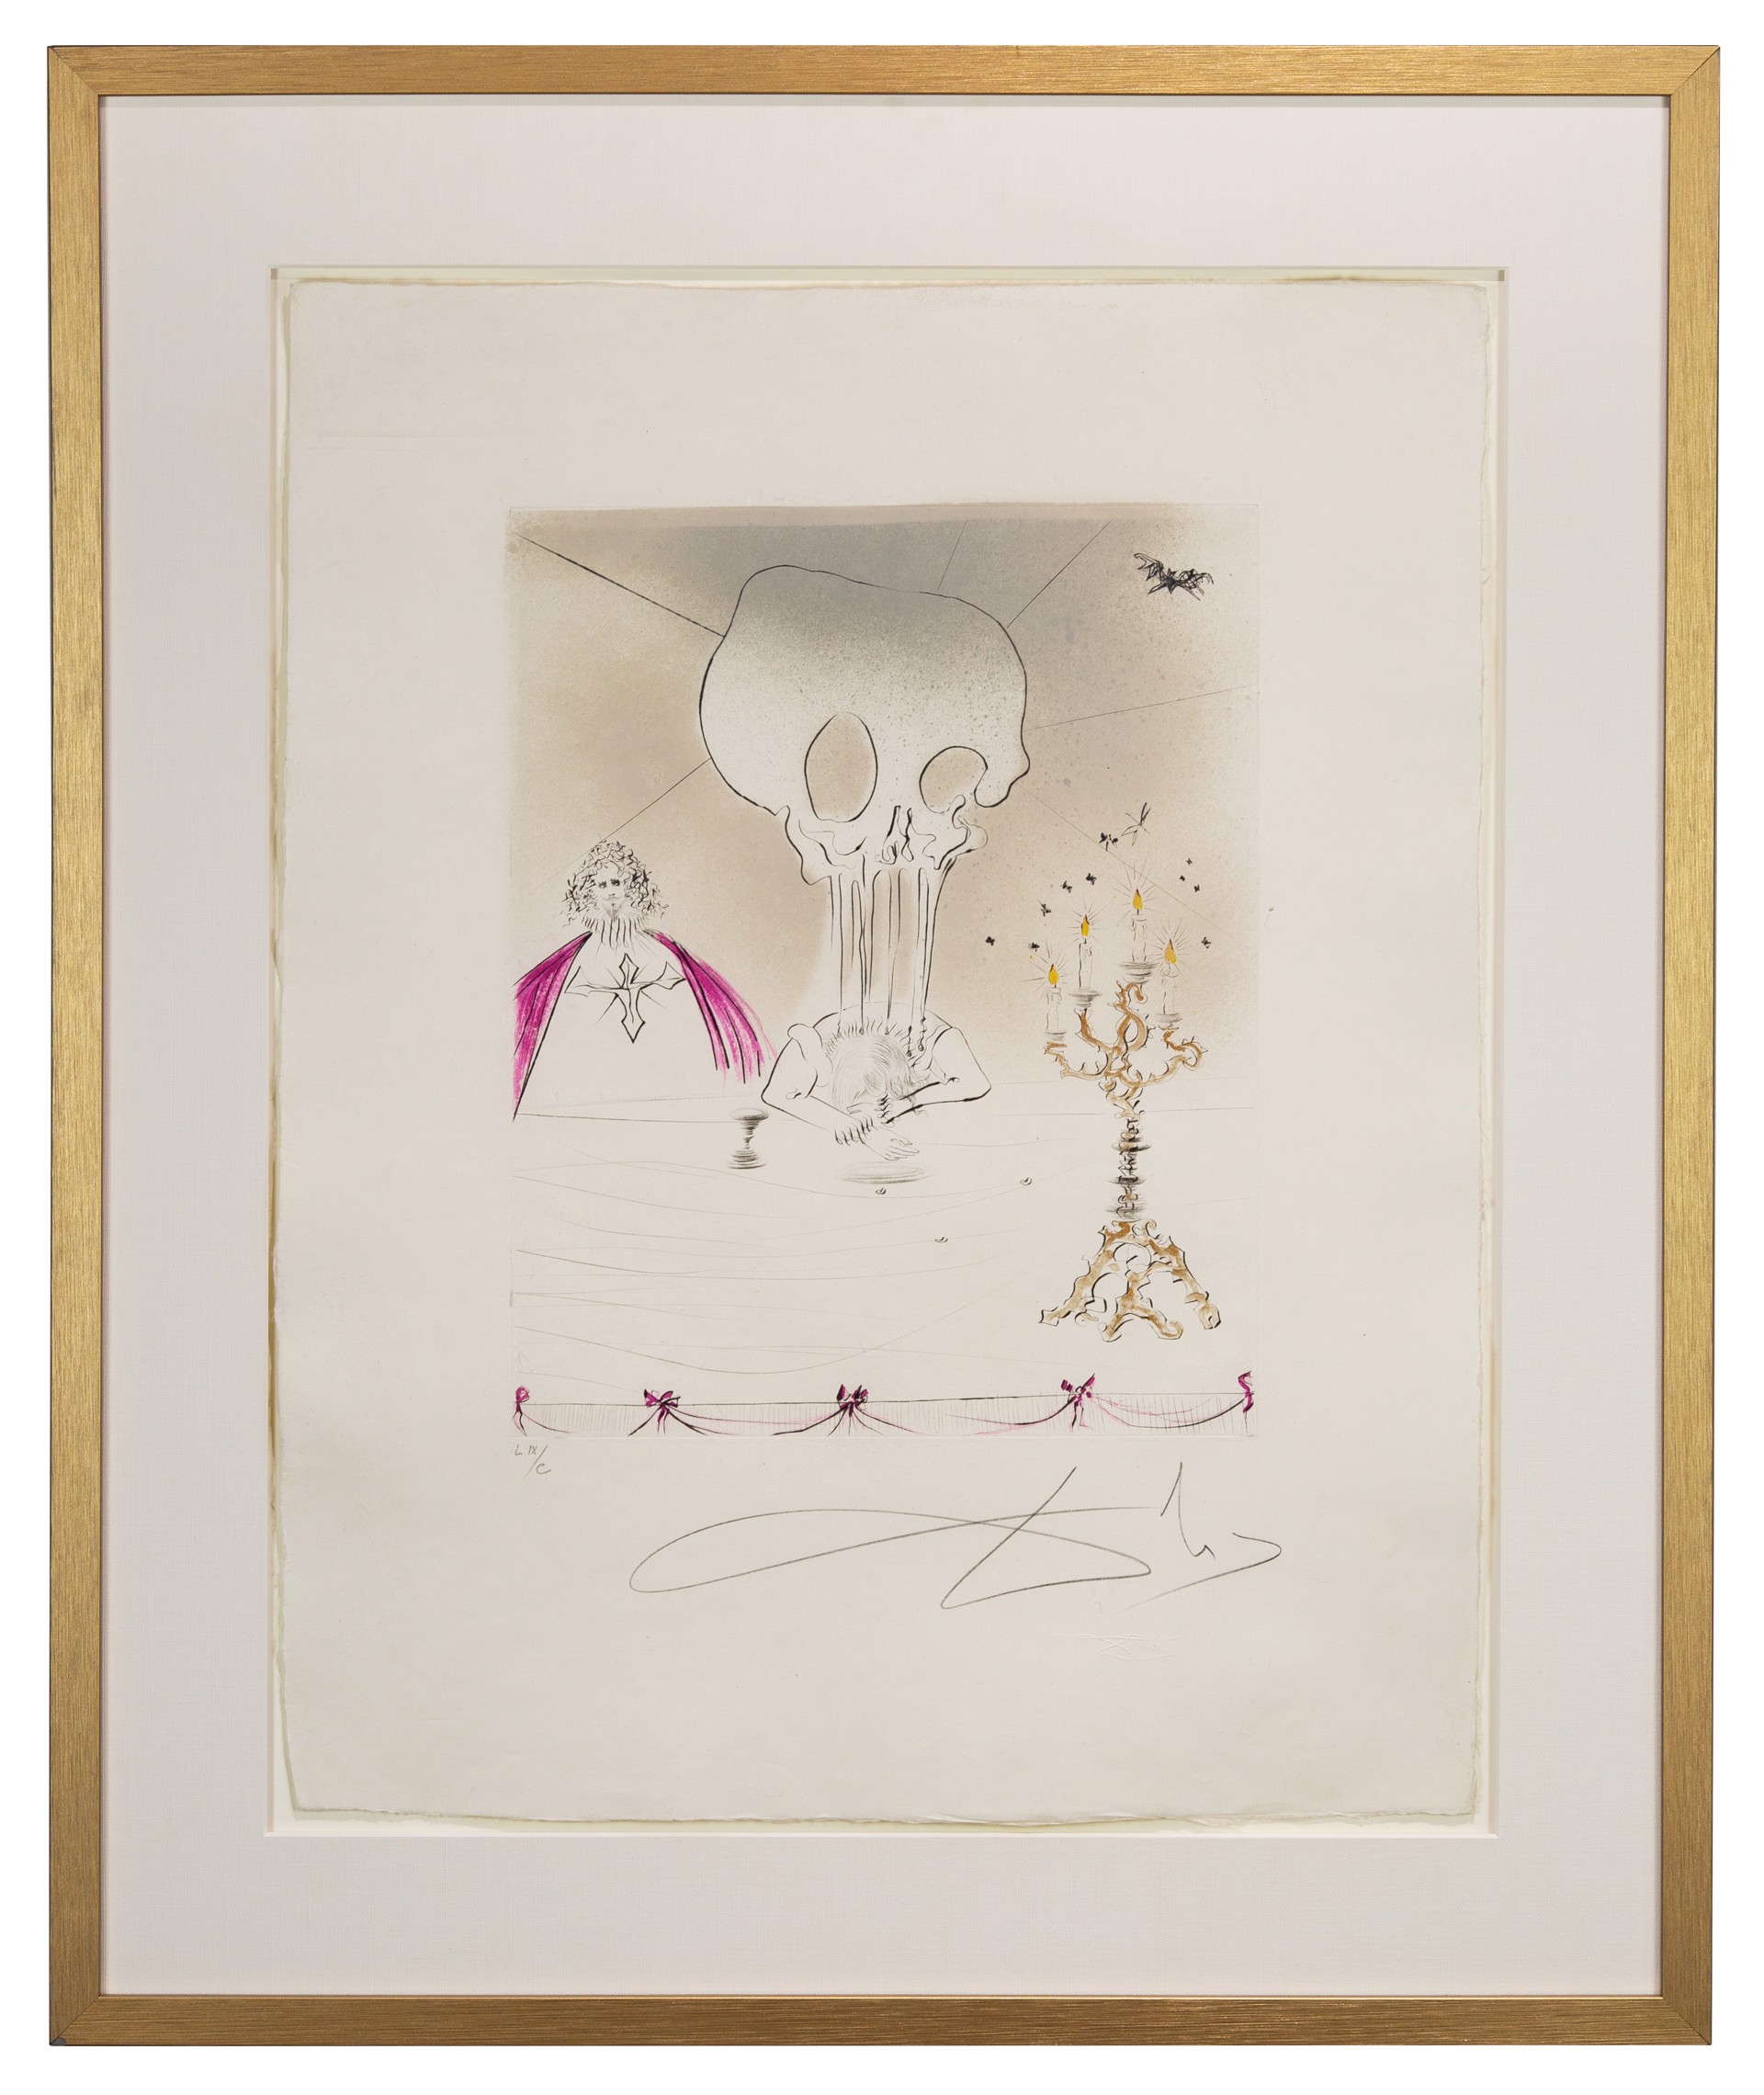 Don Juan “Le Banquet  LIX/C” by Salvador Dalí